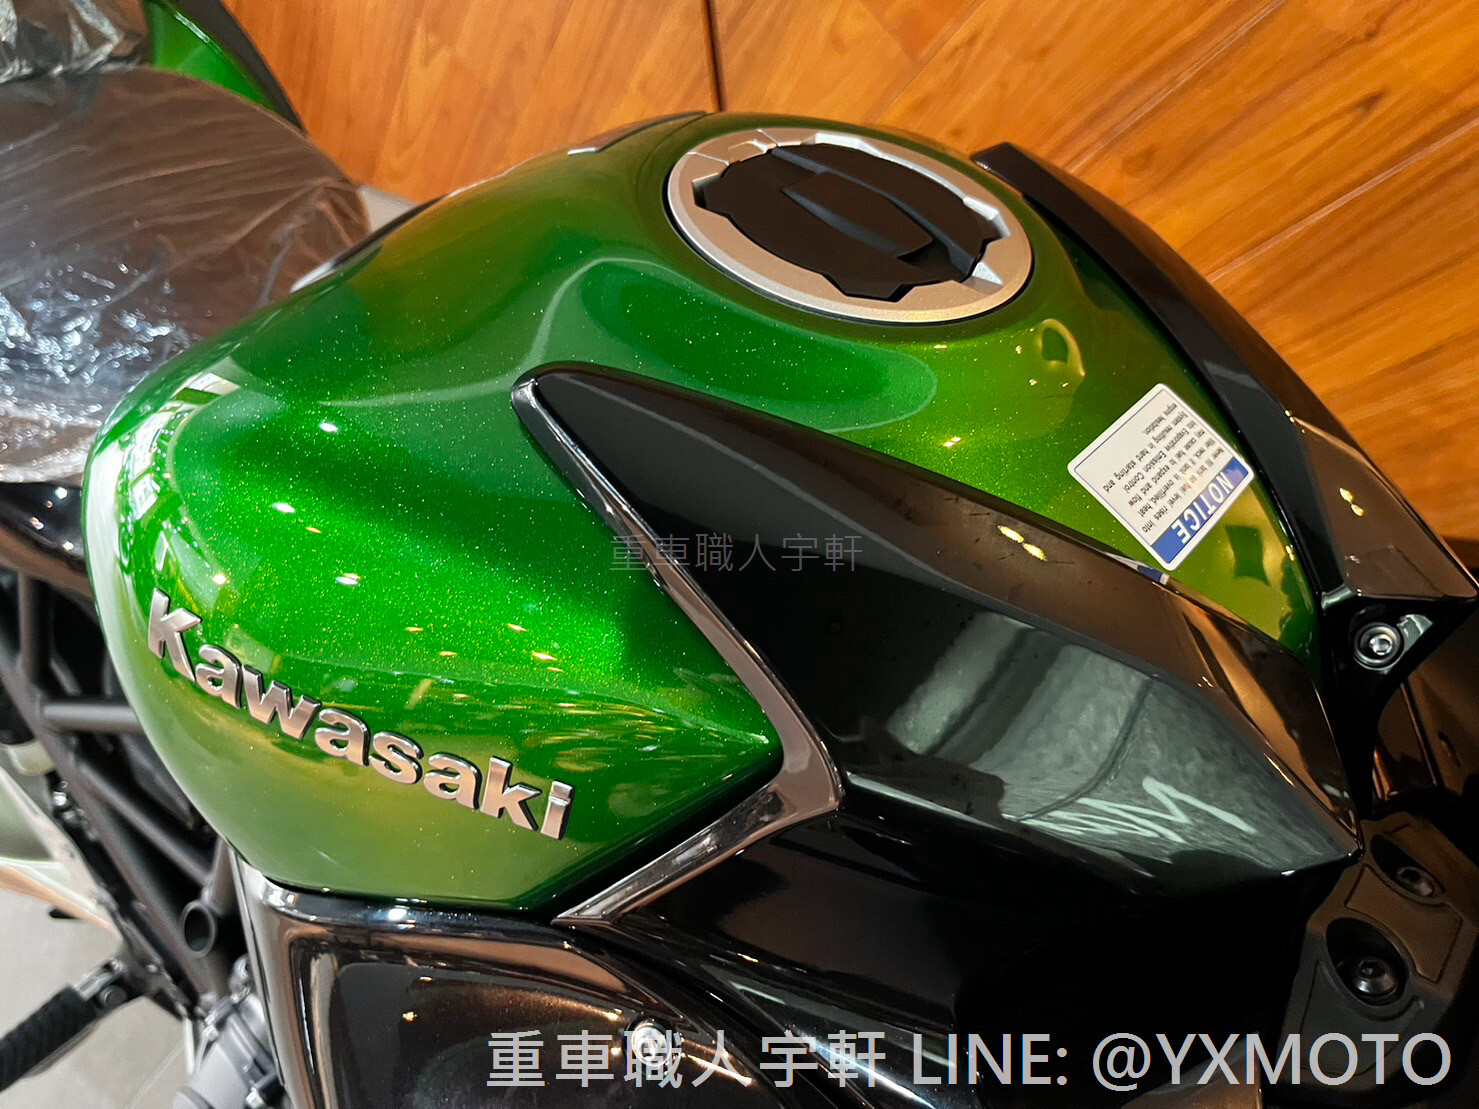 KAWASAKI Ninja H2 SX新車出售中 【敏傑宇軒】旗艦機械增壓跑旅 Kawasaki NINJA H2SX SE 總代理公司車 | 重車銷售職人-宇軒 (敏傑)